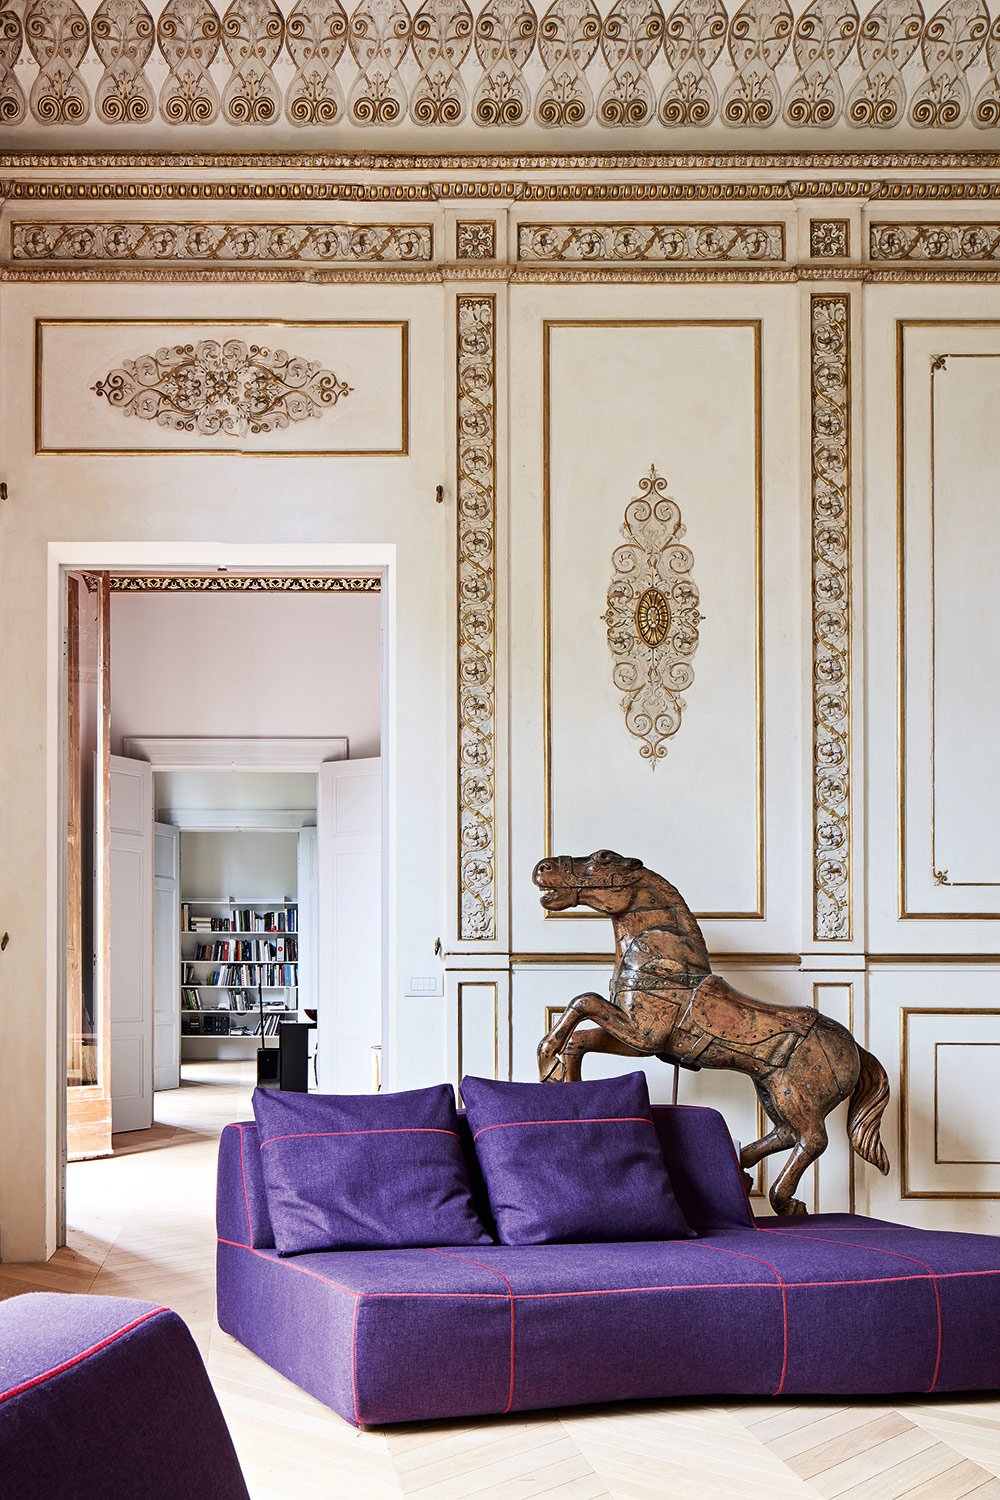 Das stilvoll-gemütliche Sofa hat die spanische Designerin Patricia Urquiola entworfen. Dahinter ein originales Karussellpferdchen aus Holz.